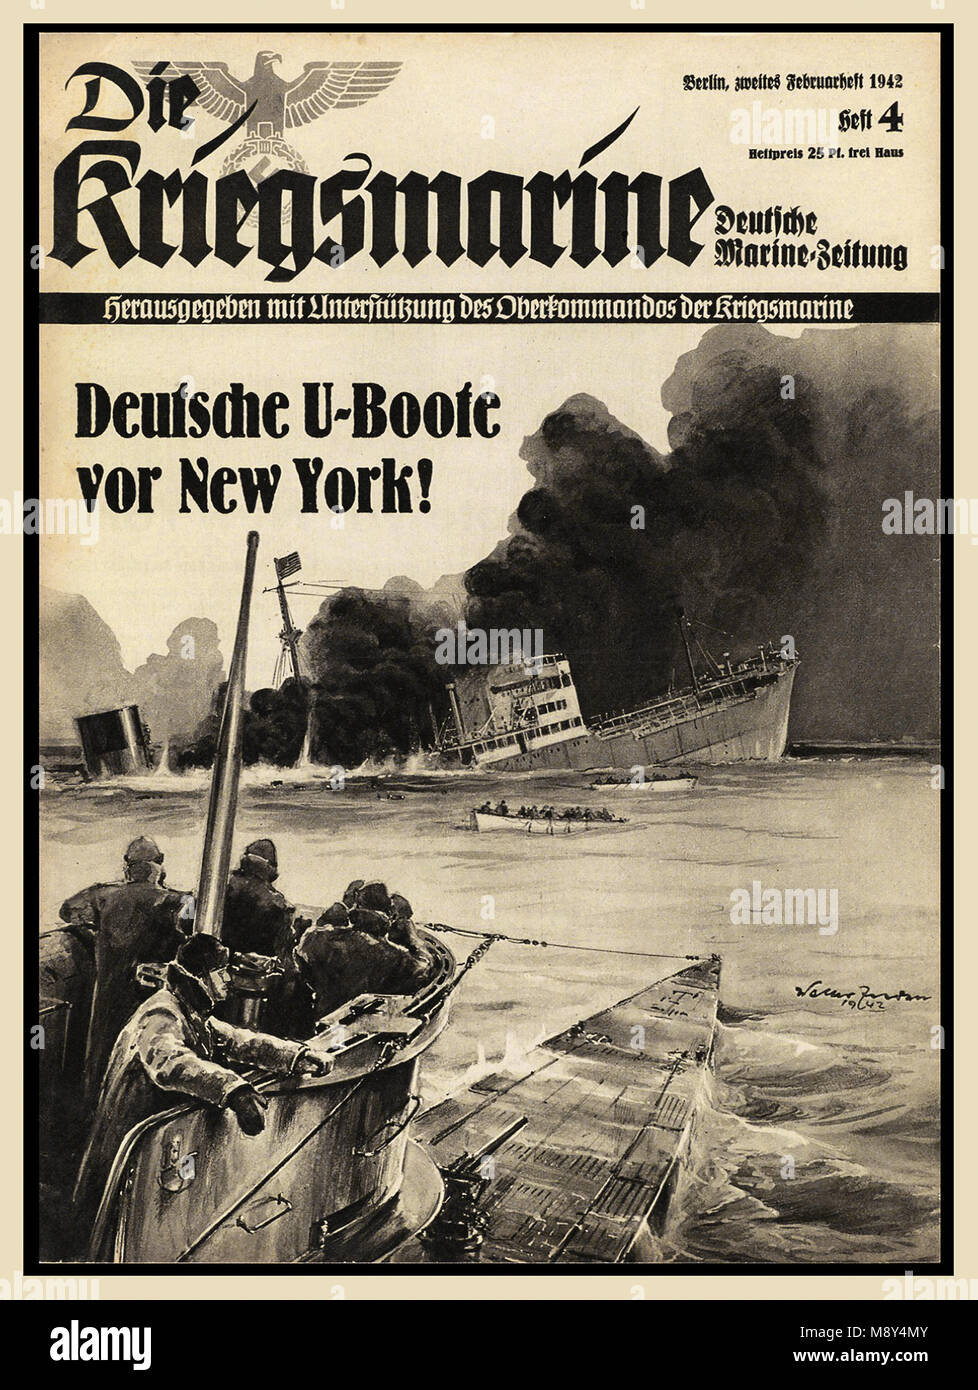 WW2 1940 illustré la propagande nazie, la Kriegsmarine '' magazine de la marine allemande contenant des rapports sur la guerre navale allemande. Capot avant montre U-boat allemand naufrage d'un navire marchand en partance pour New York USA Banque D'Images